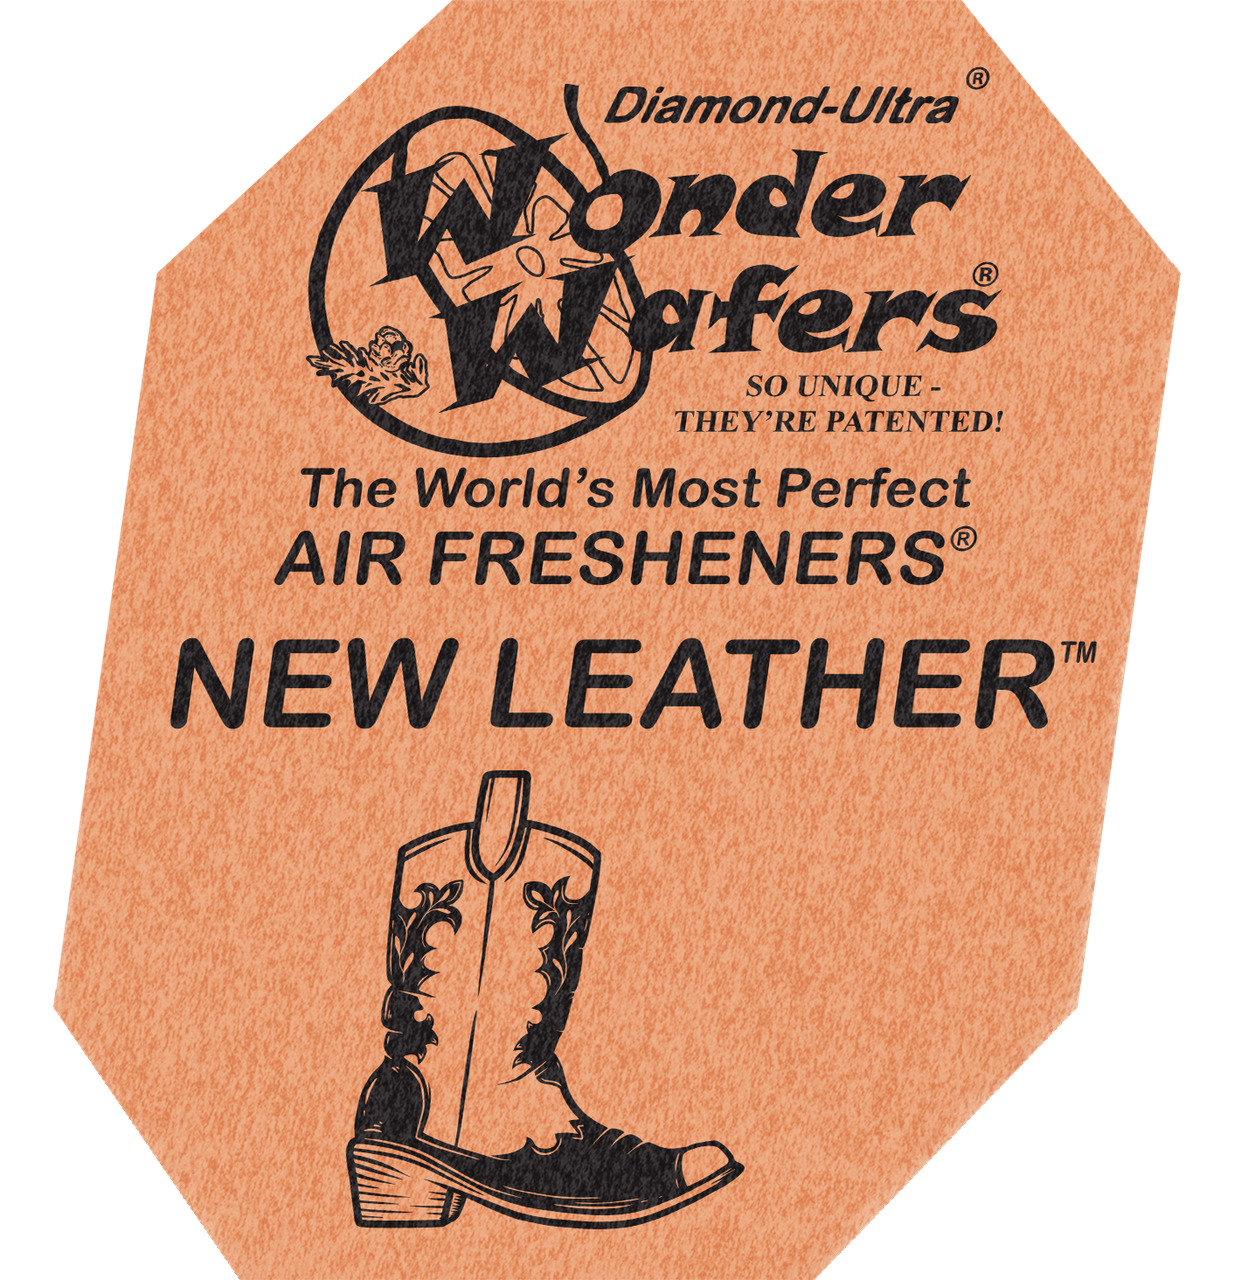 Ароматизатор у пластинці Wonder Wafers, 65 x 50 мм "Нова Шкіра" (New Leather)